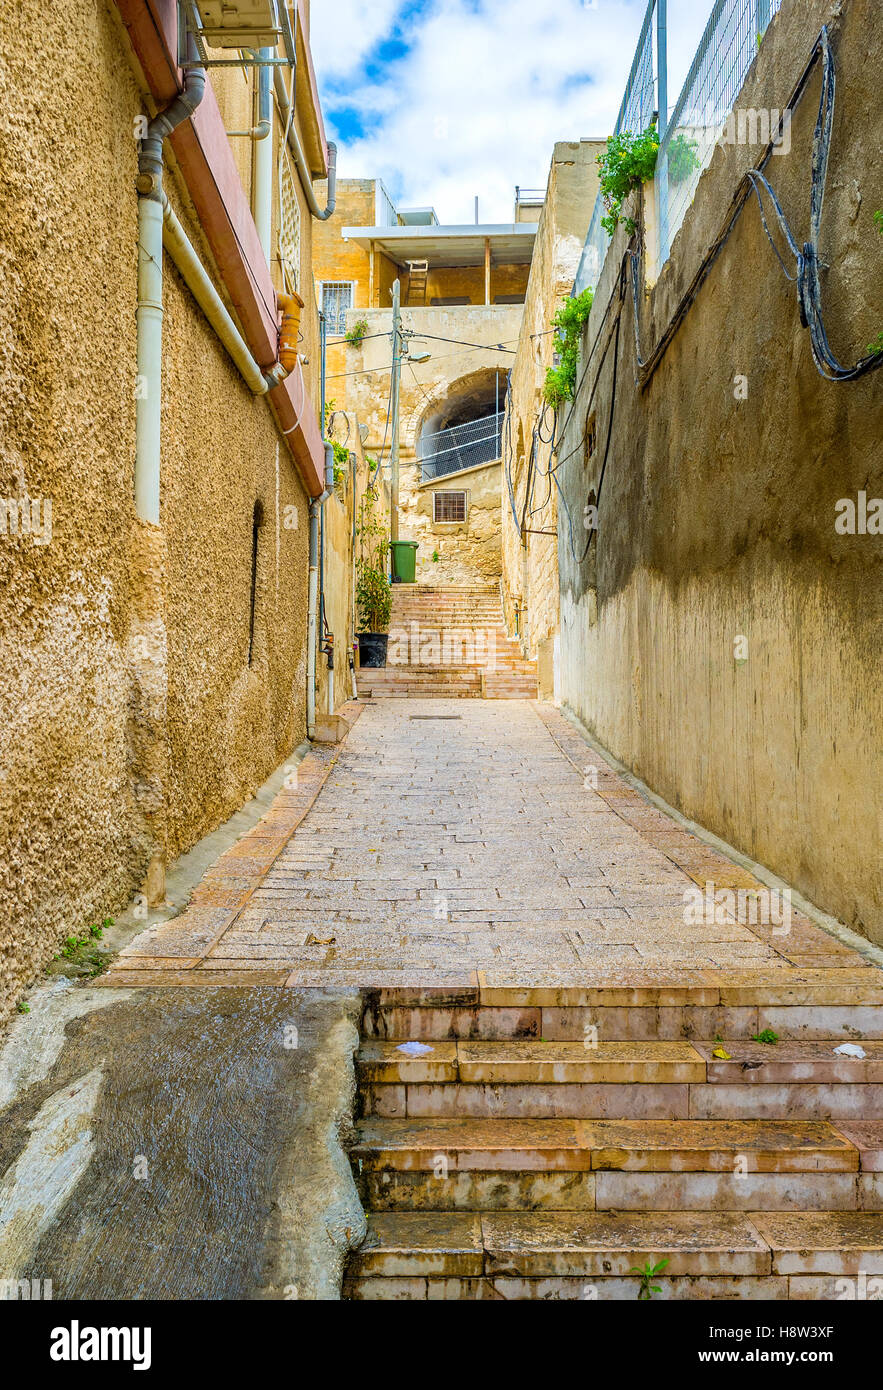 Il modo migliore per scoprire la città vecchia è a perdersi nel labirinto di stradine, vicoli e scalinate, Nazeret, Israele. Foto Stock